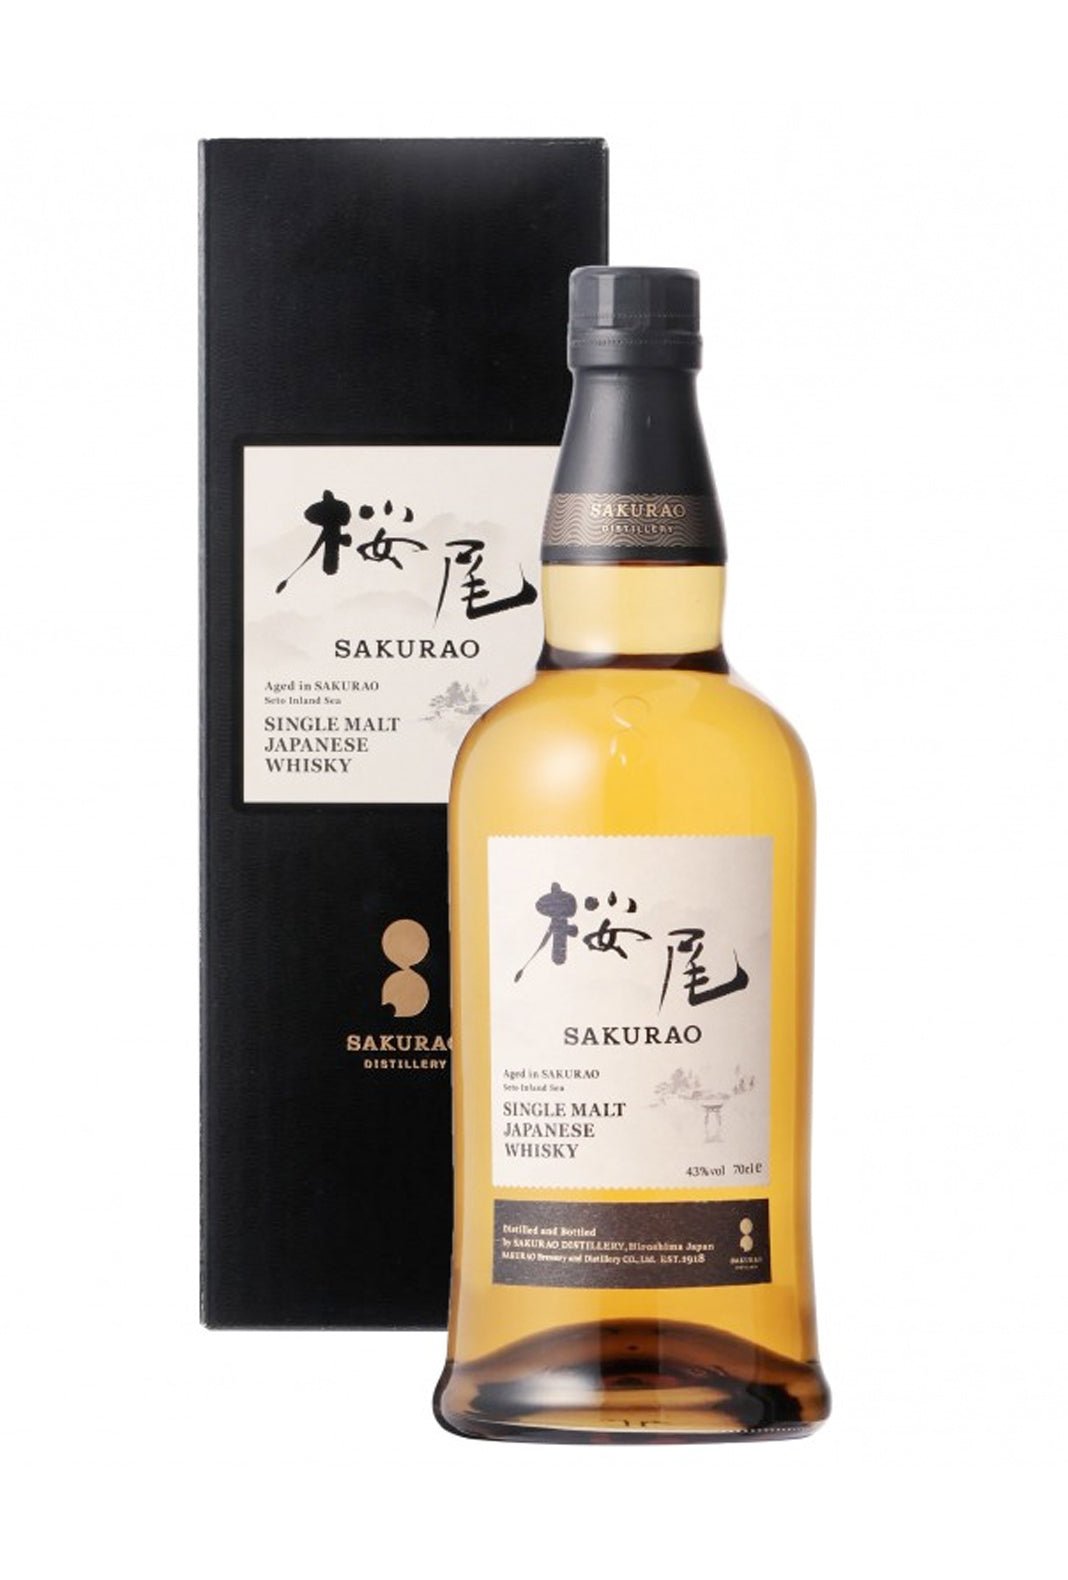 Sakurao Single Malt Japanese Whisky 43% 700ml | Whisky | Shop online at Spirits of France